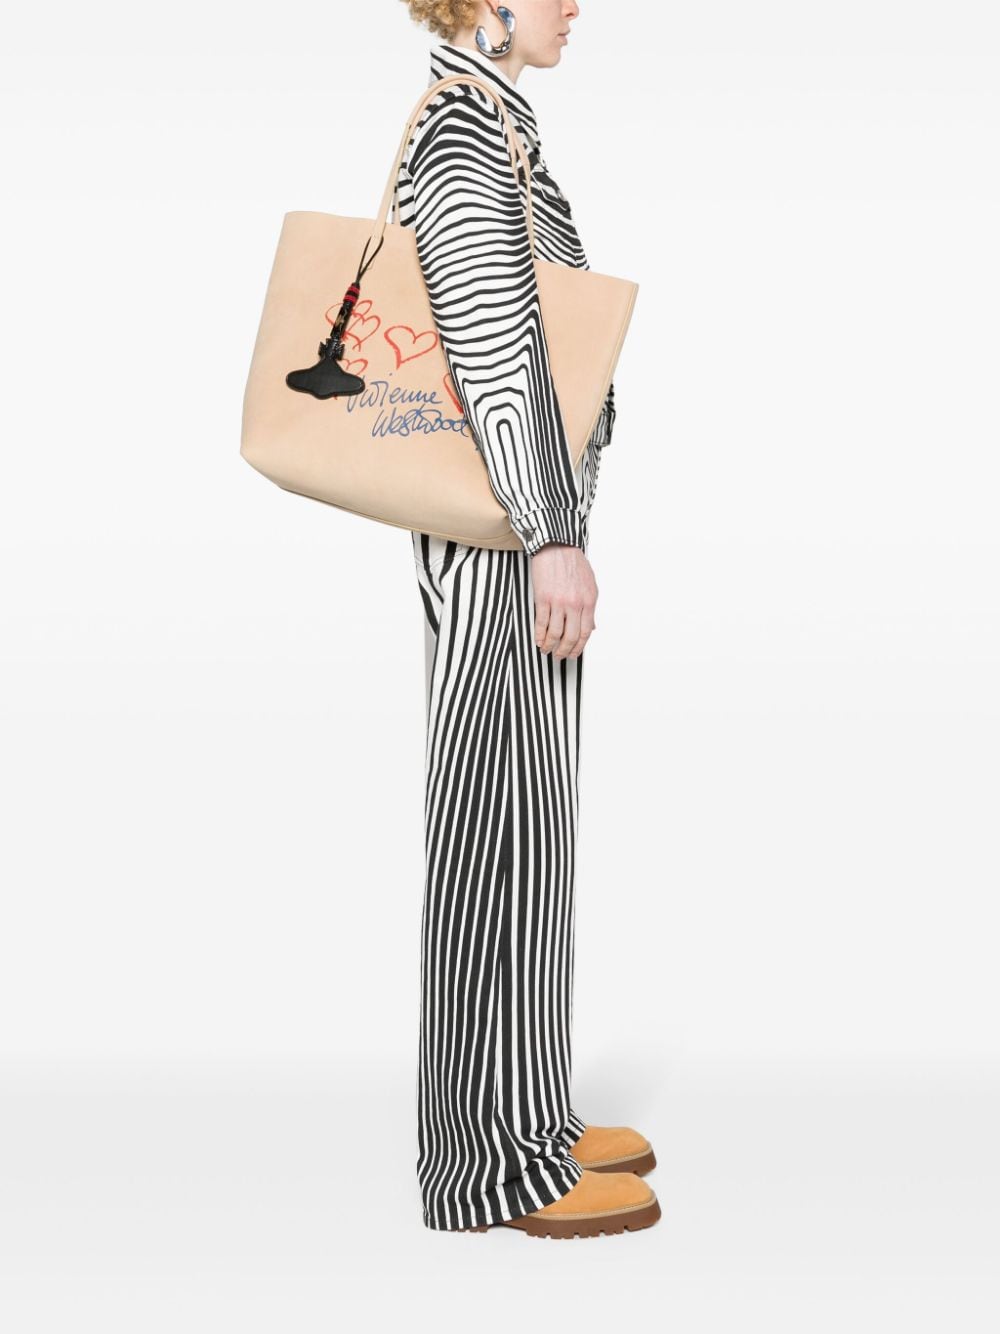 Vivienne Westwood Studio logo-print leather tote bag - Beige